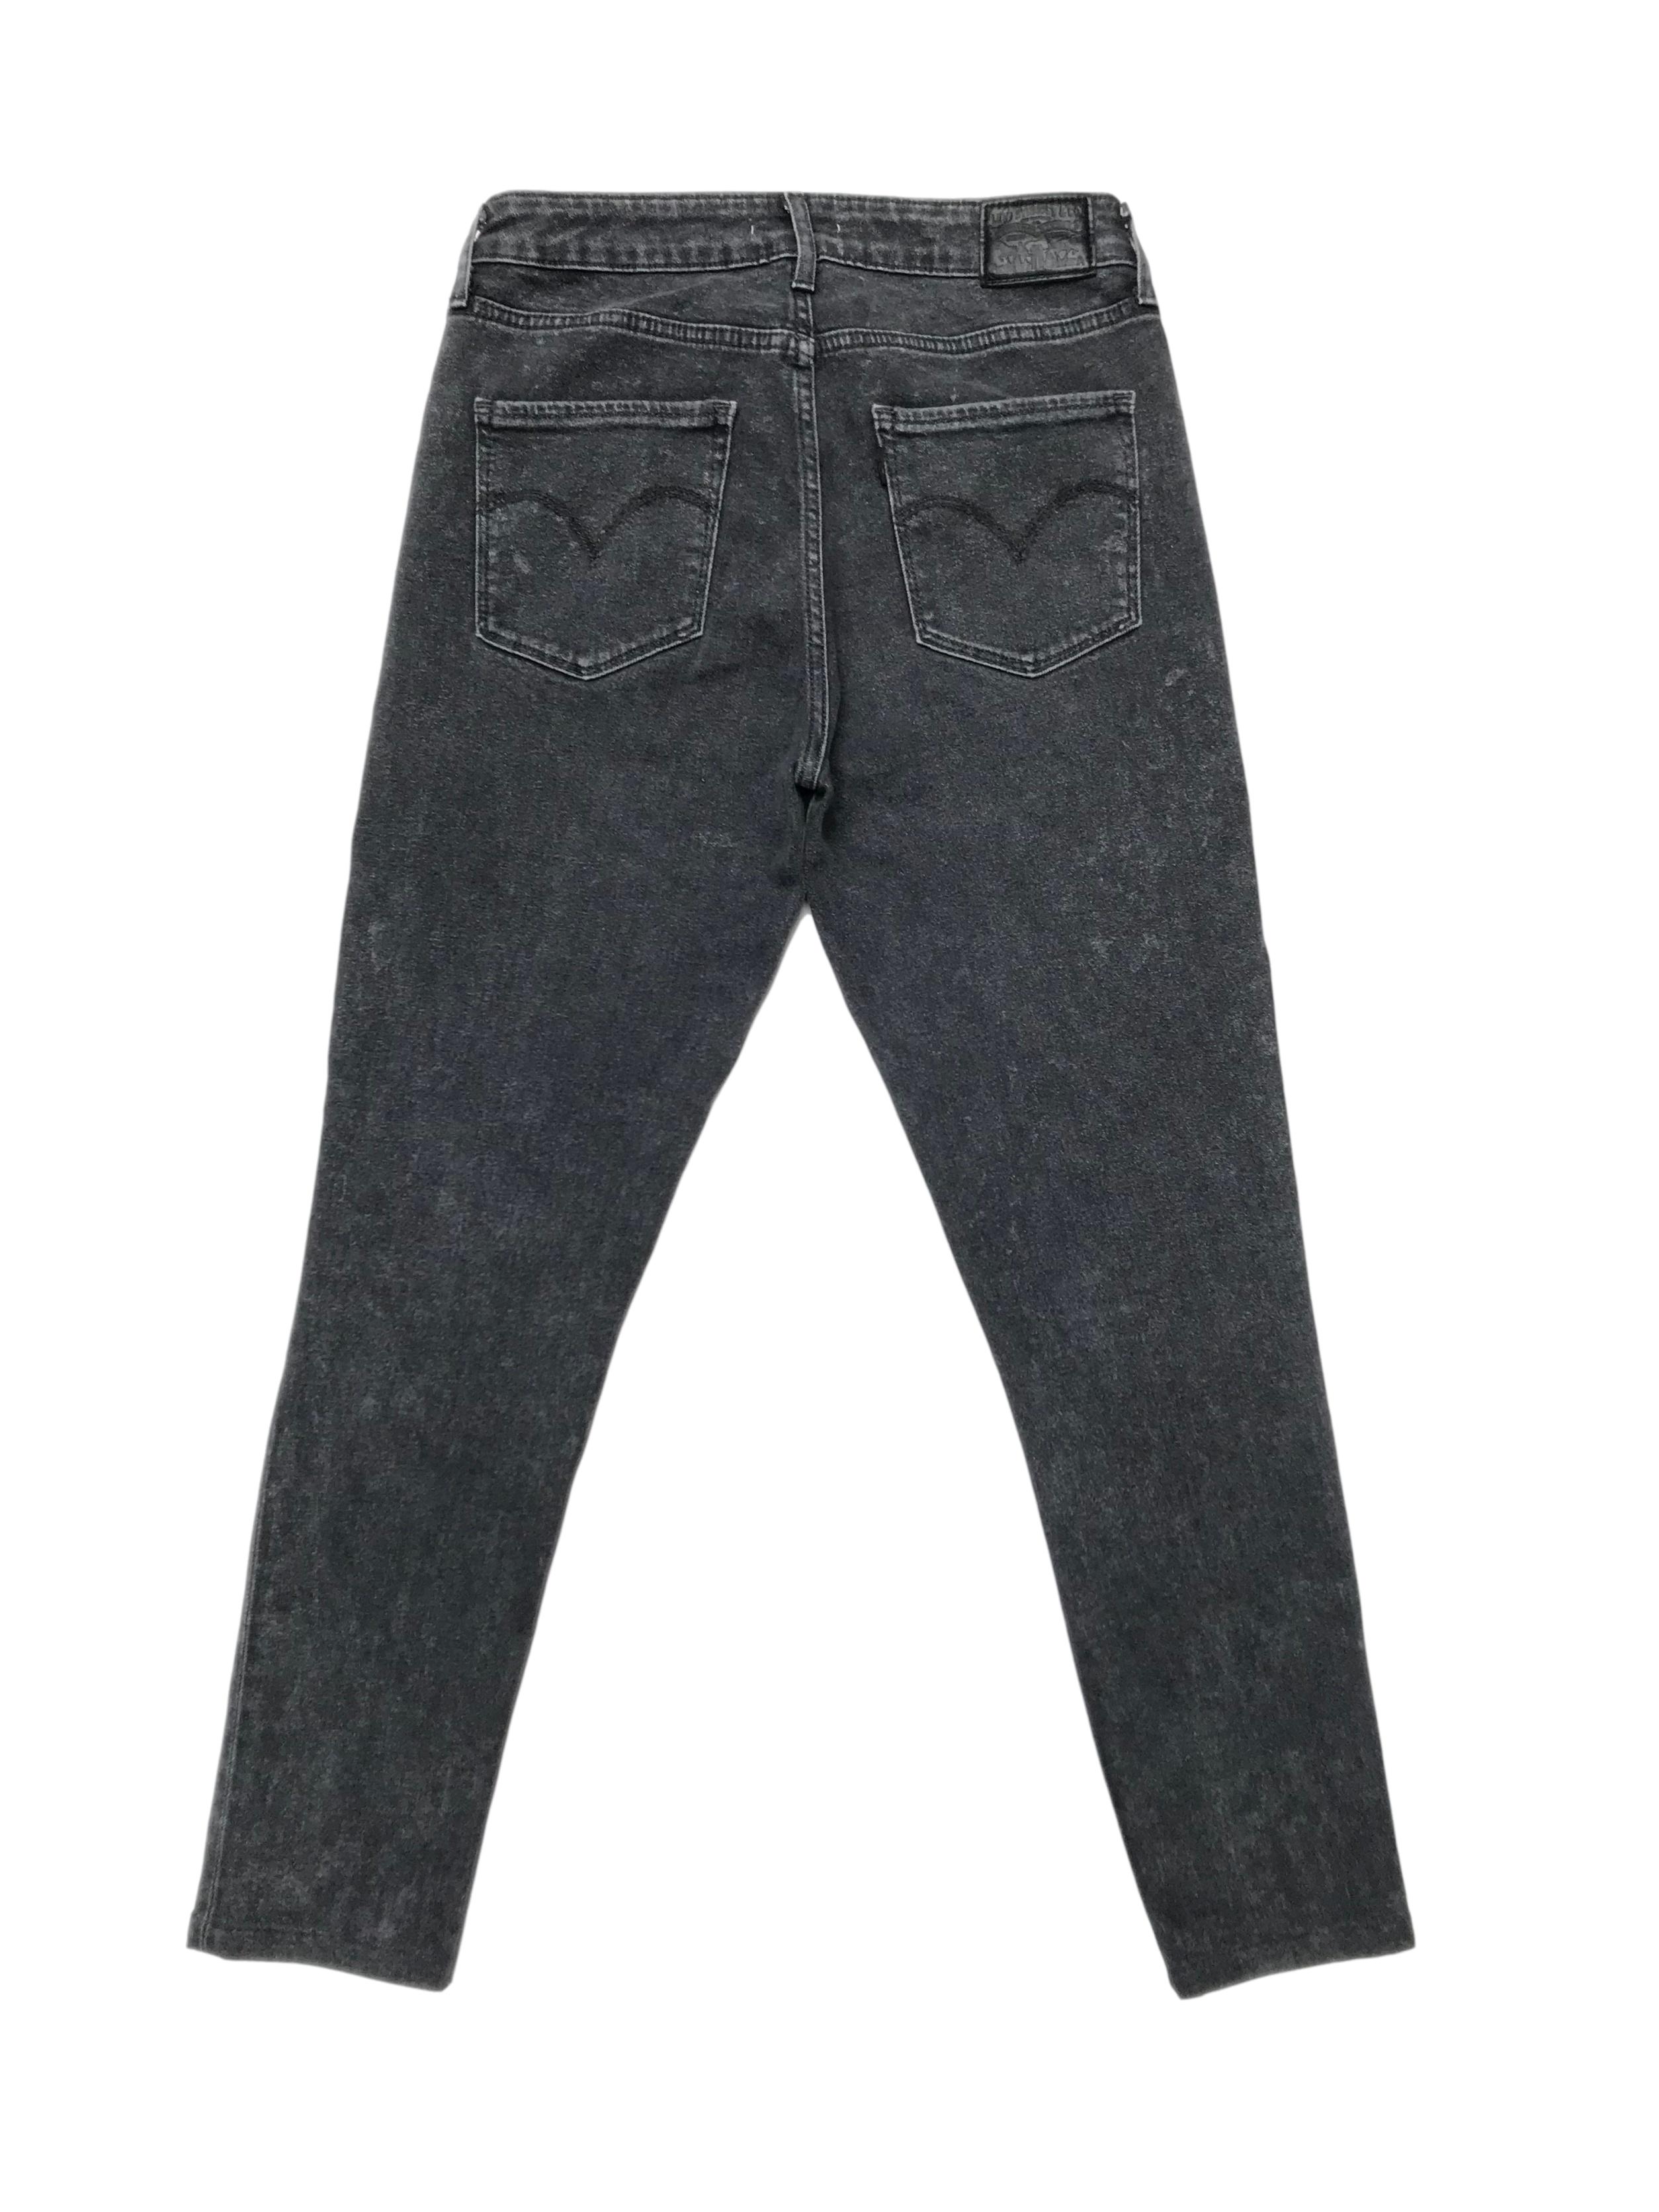 Pantalón jean Levis 721 high rise skinny gris efecto lavado, ligeramente stretch. Cintura 72cm Largo 92cm